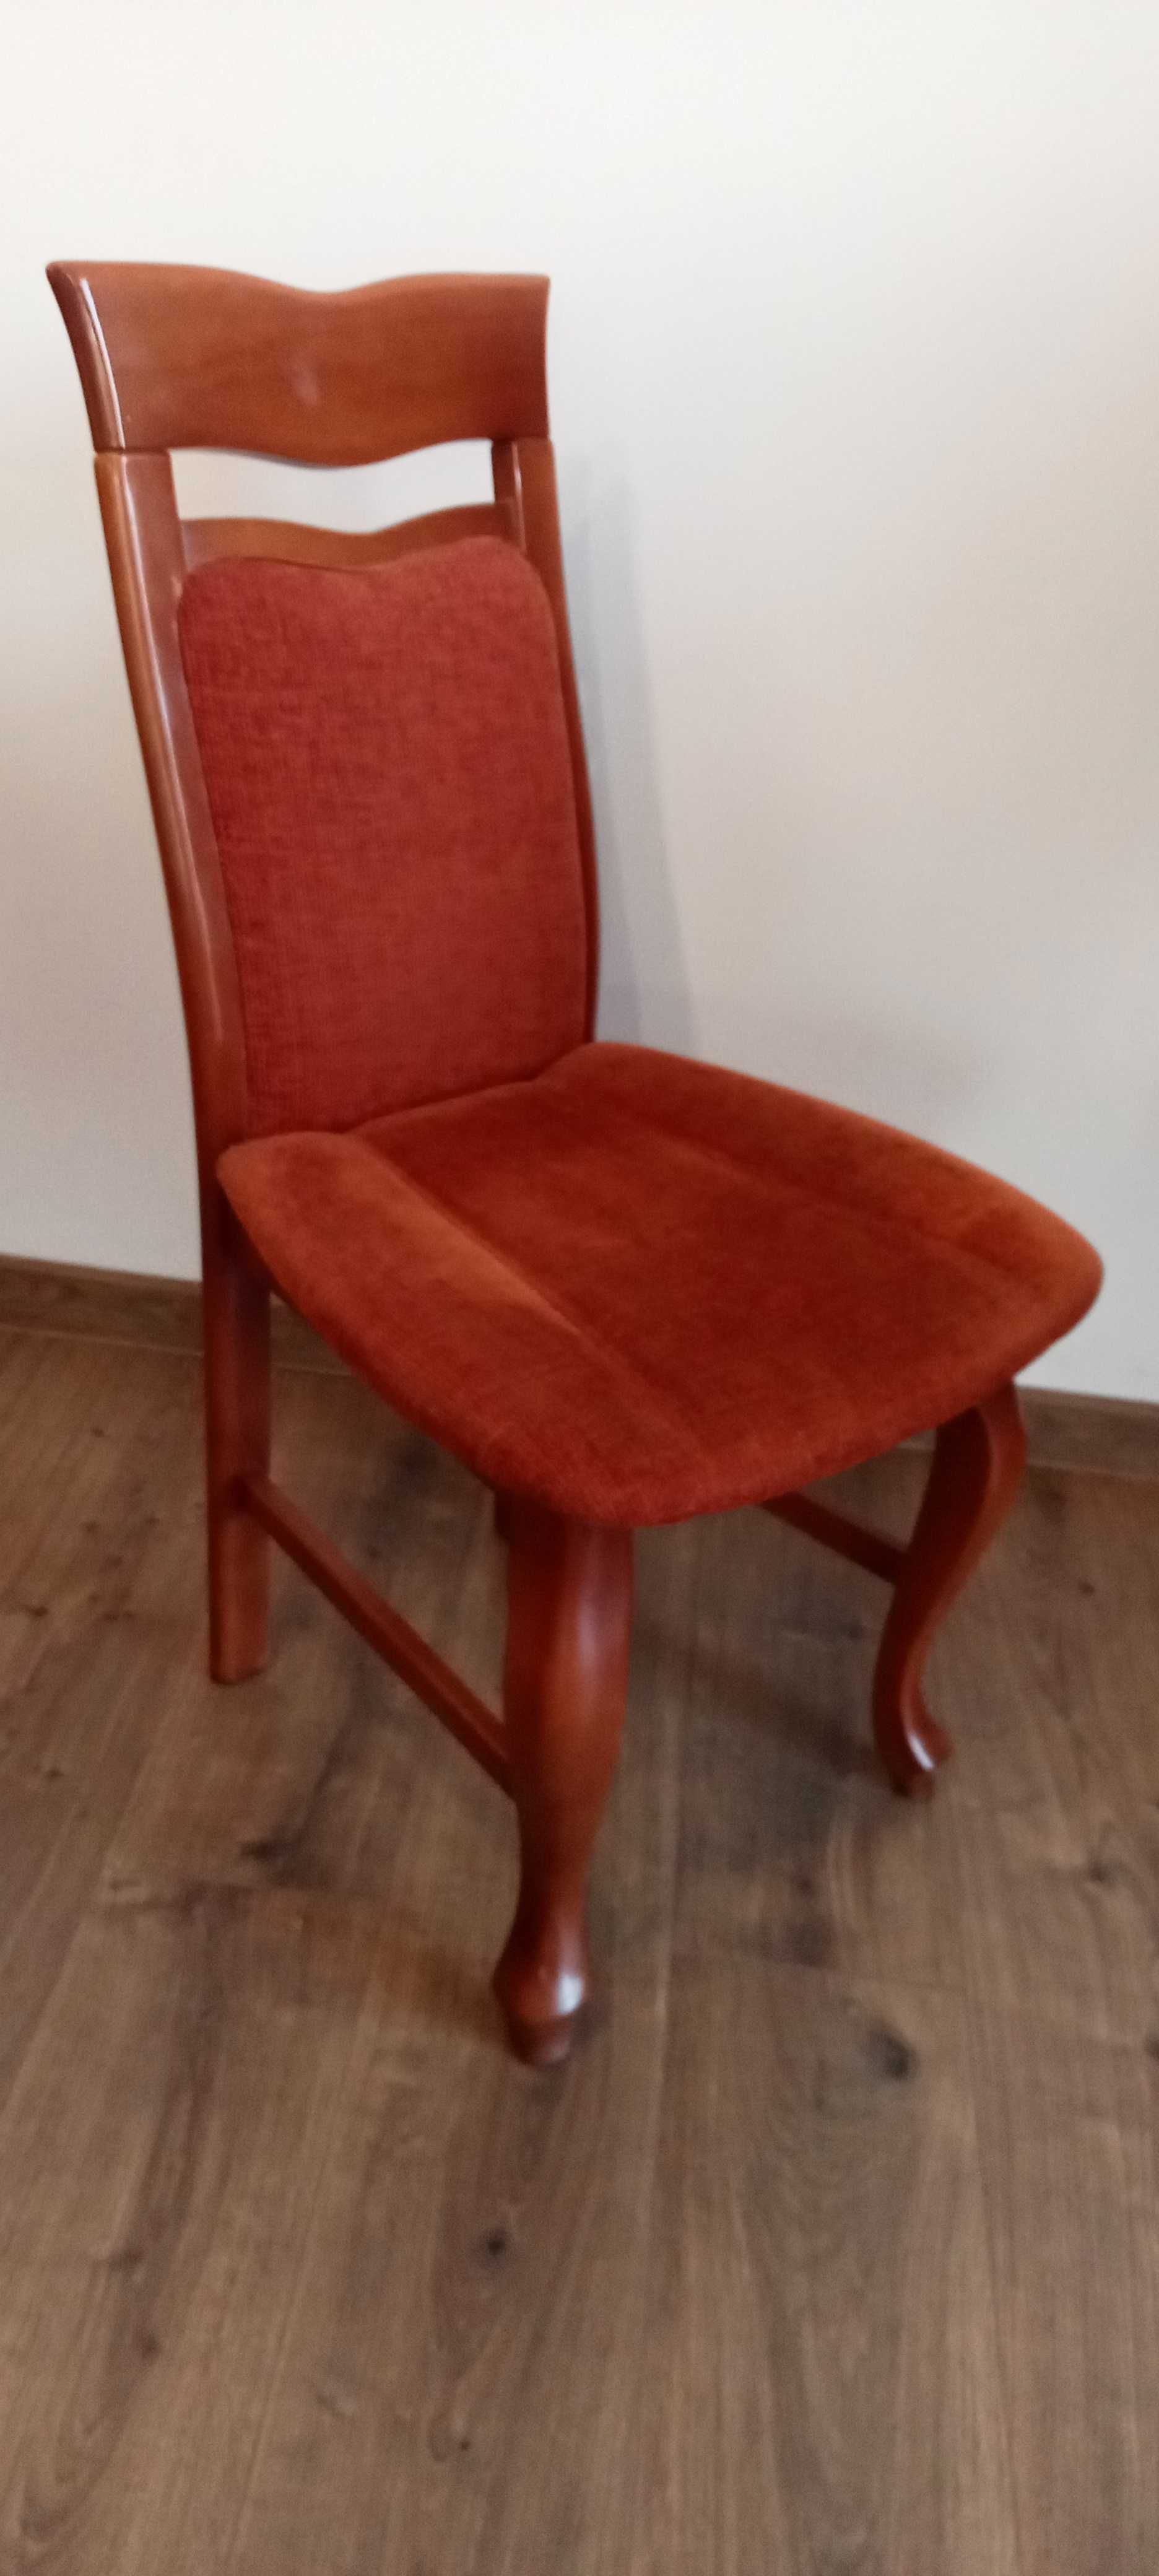 Krzesła drewniane, tapicerowane 10 sztuk